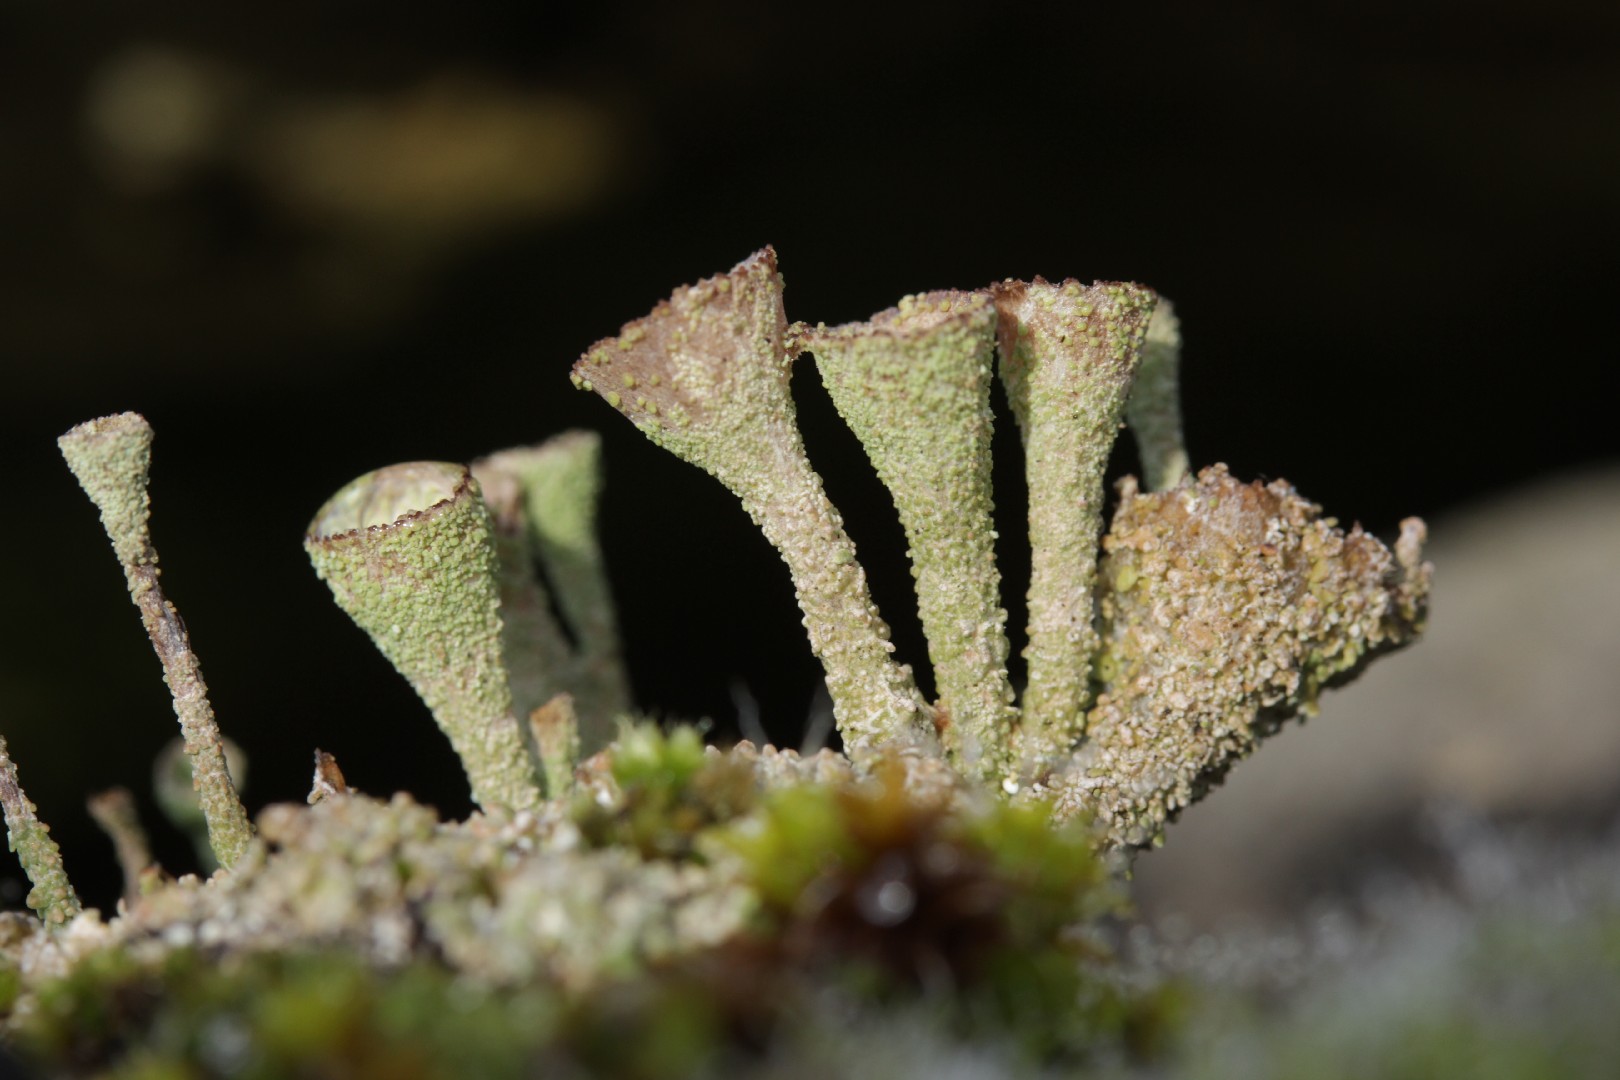 Trumpet cup lichen